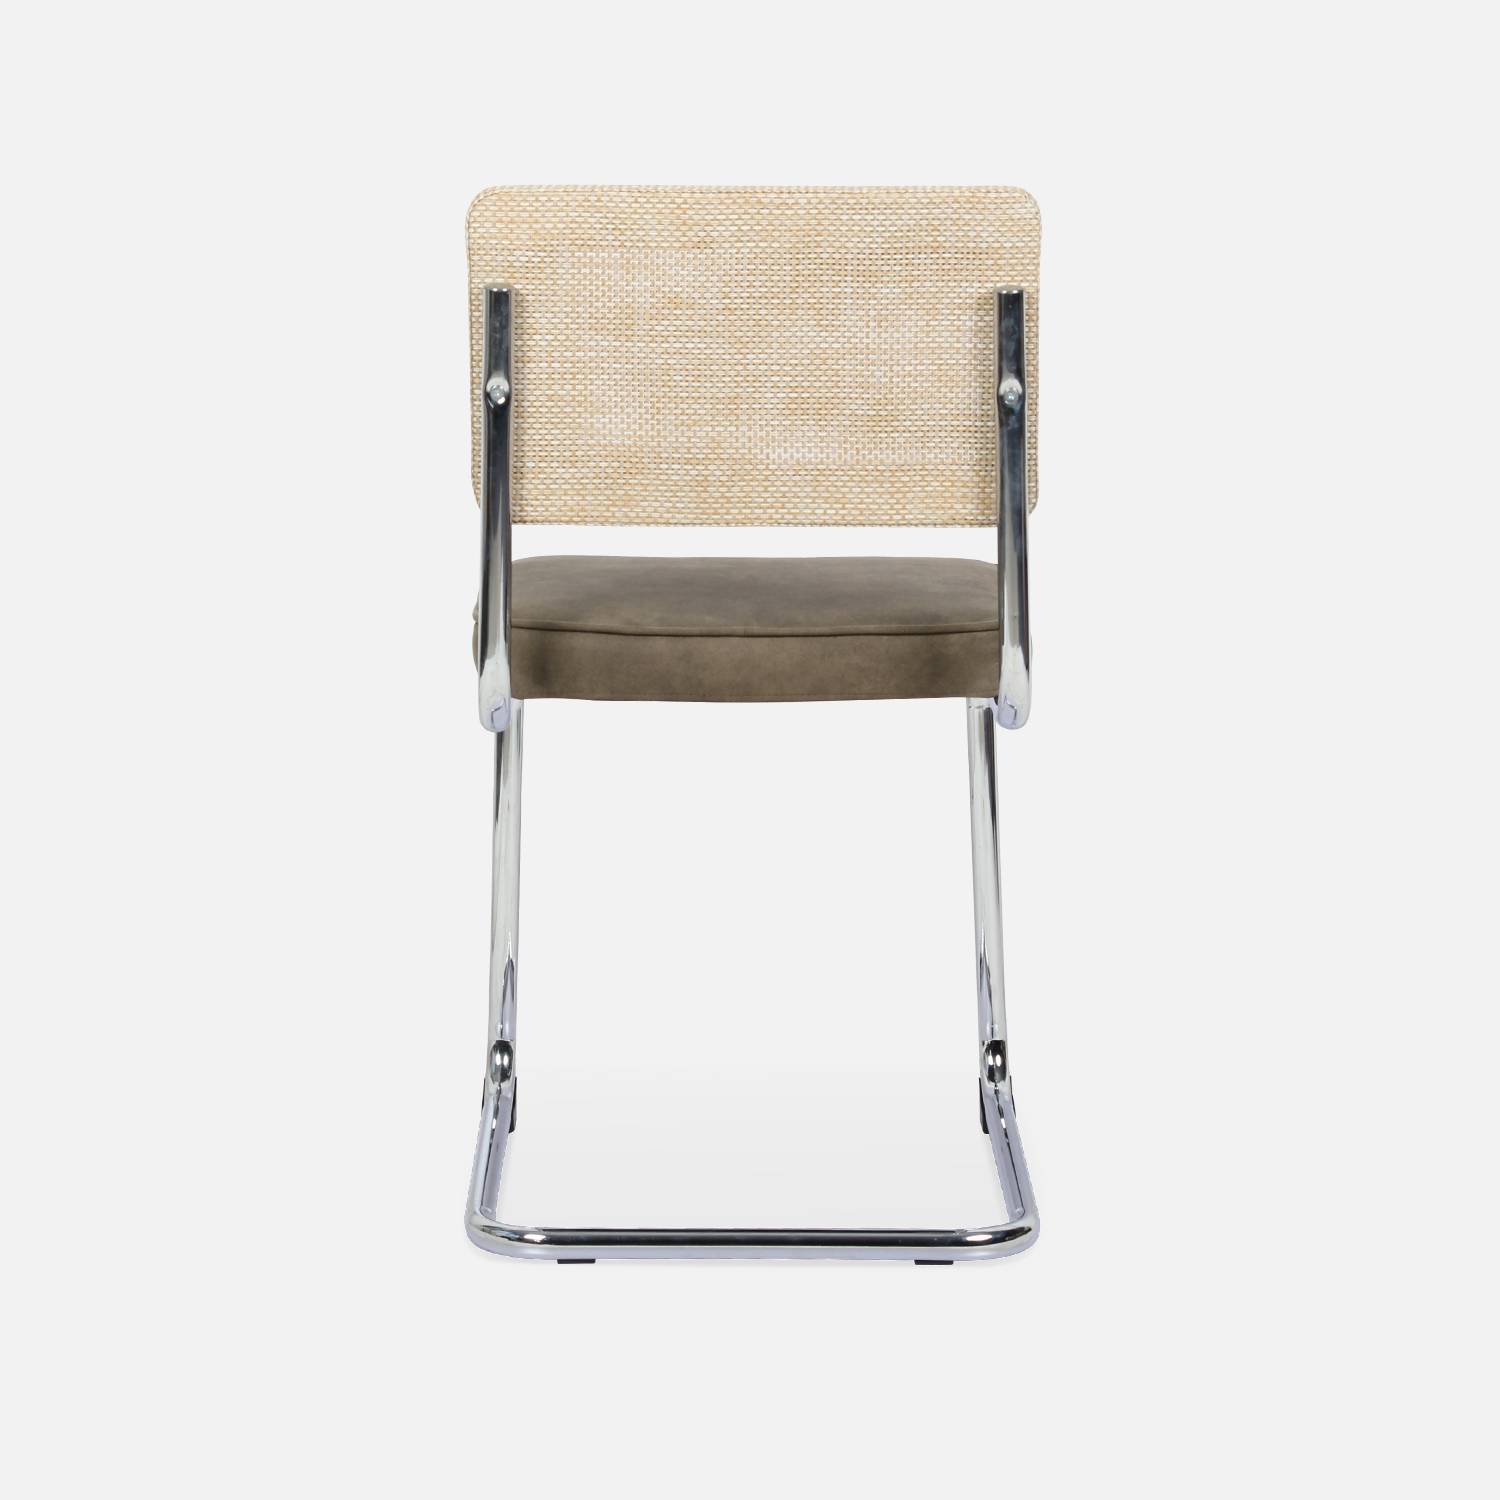 2 cadeiras cantilever - Maja - tecido caqui e resina com efeito de rotim, 46 x 54,5 x 84,5 cm Photo7